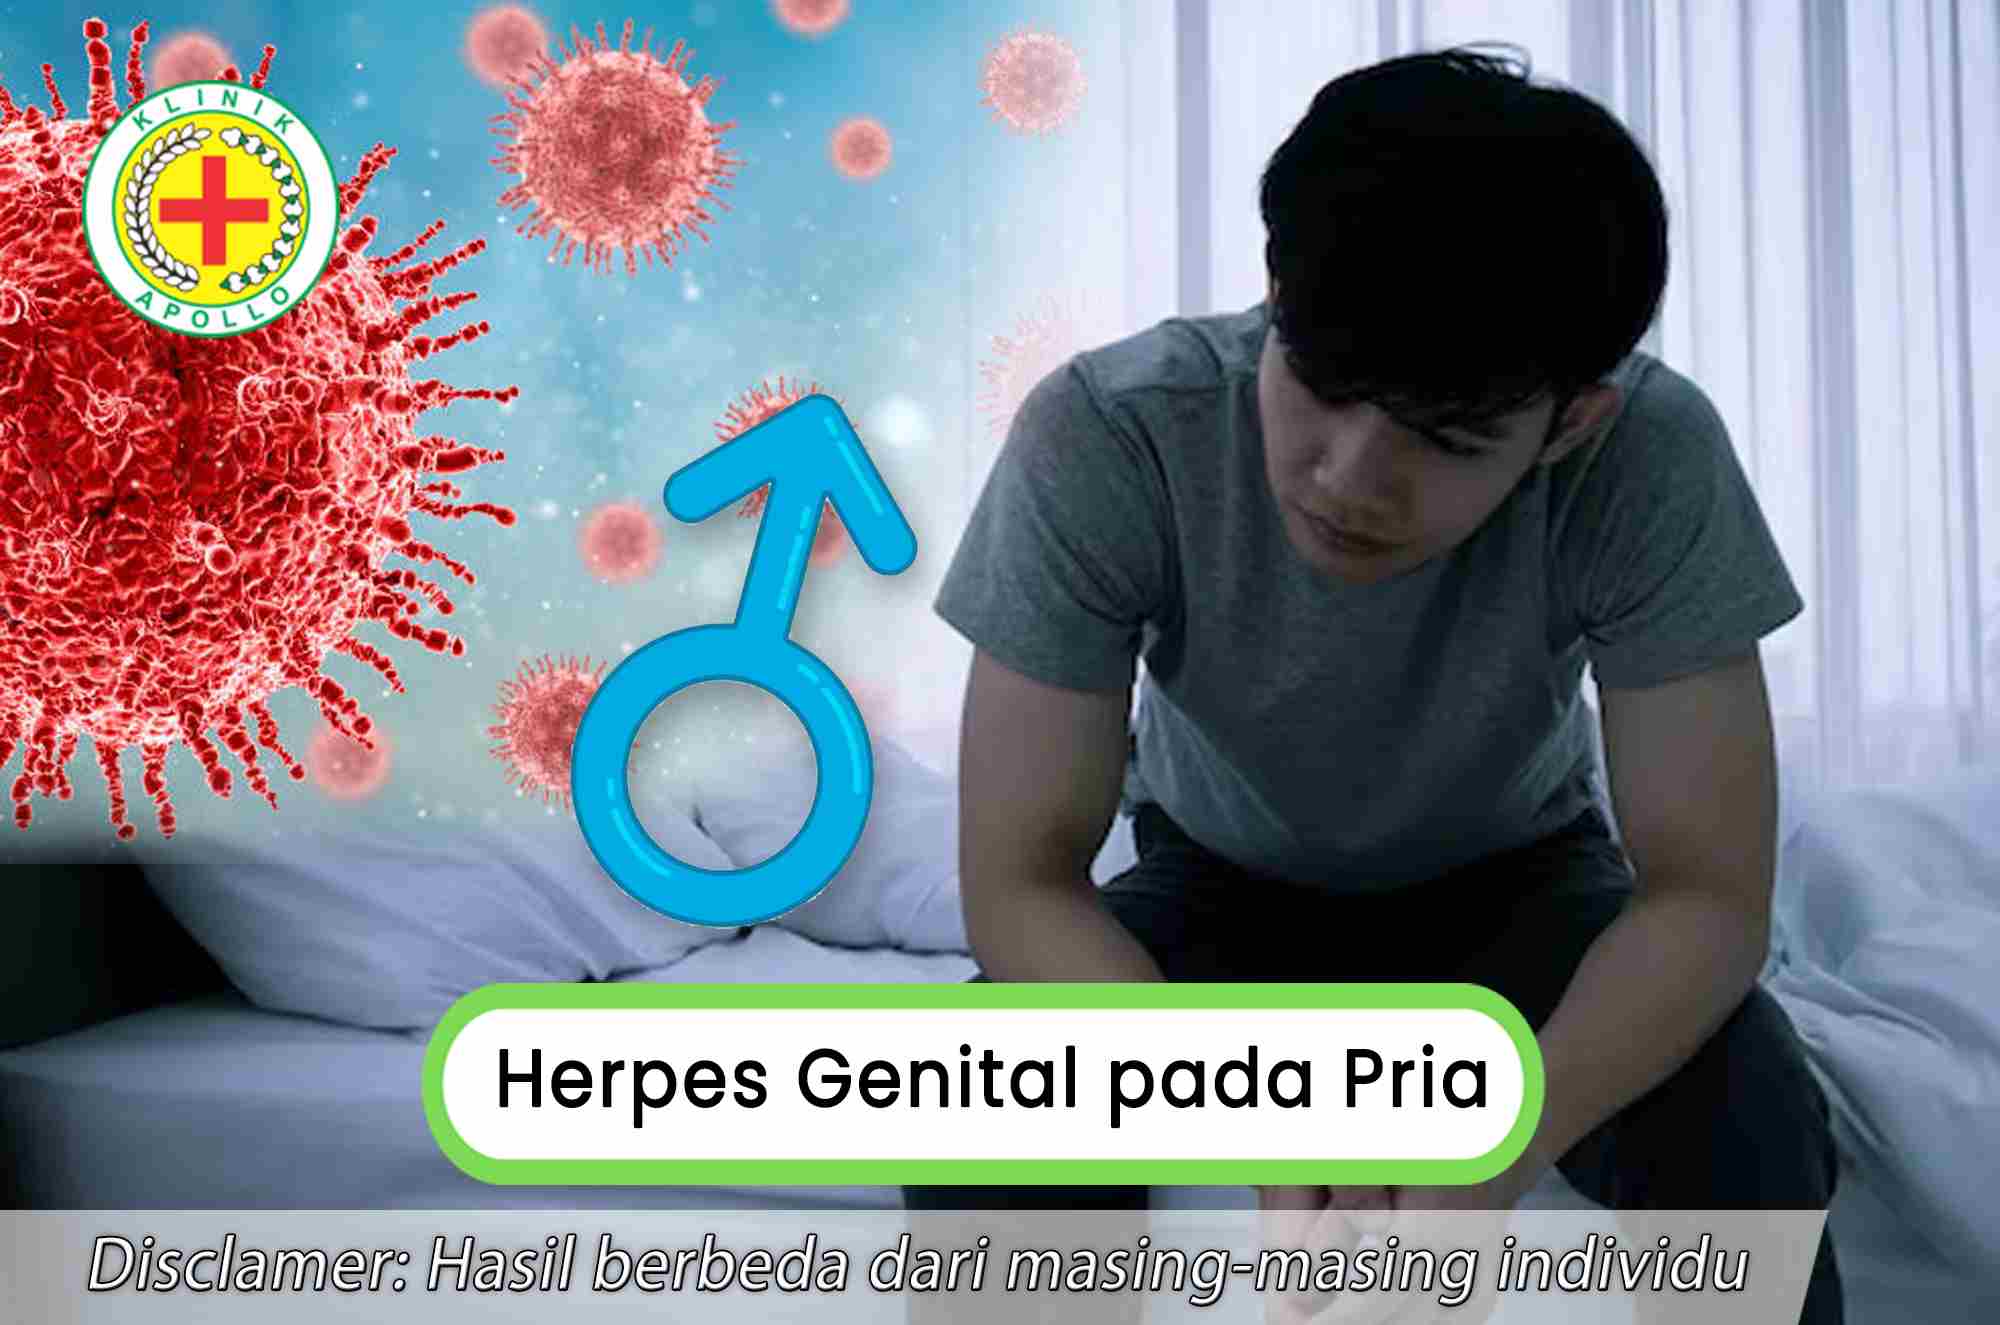 Herpes Genital pada Pria Jarang Terjadi, seperti Apa Tandanya?